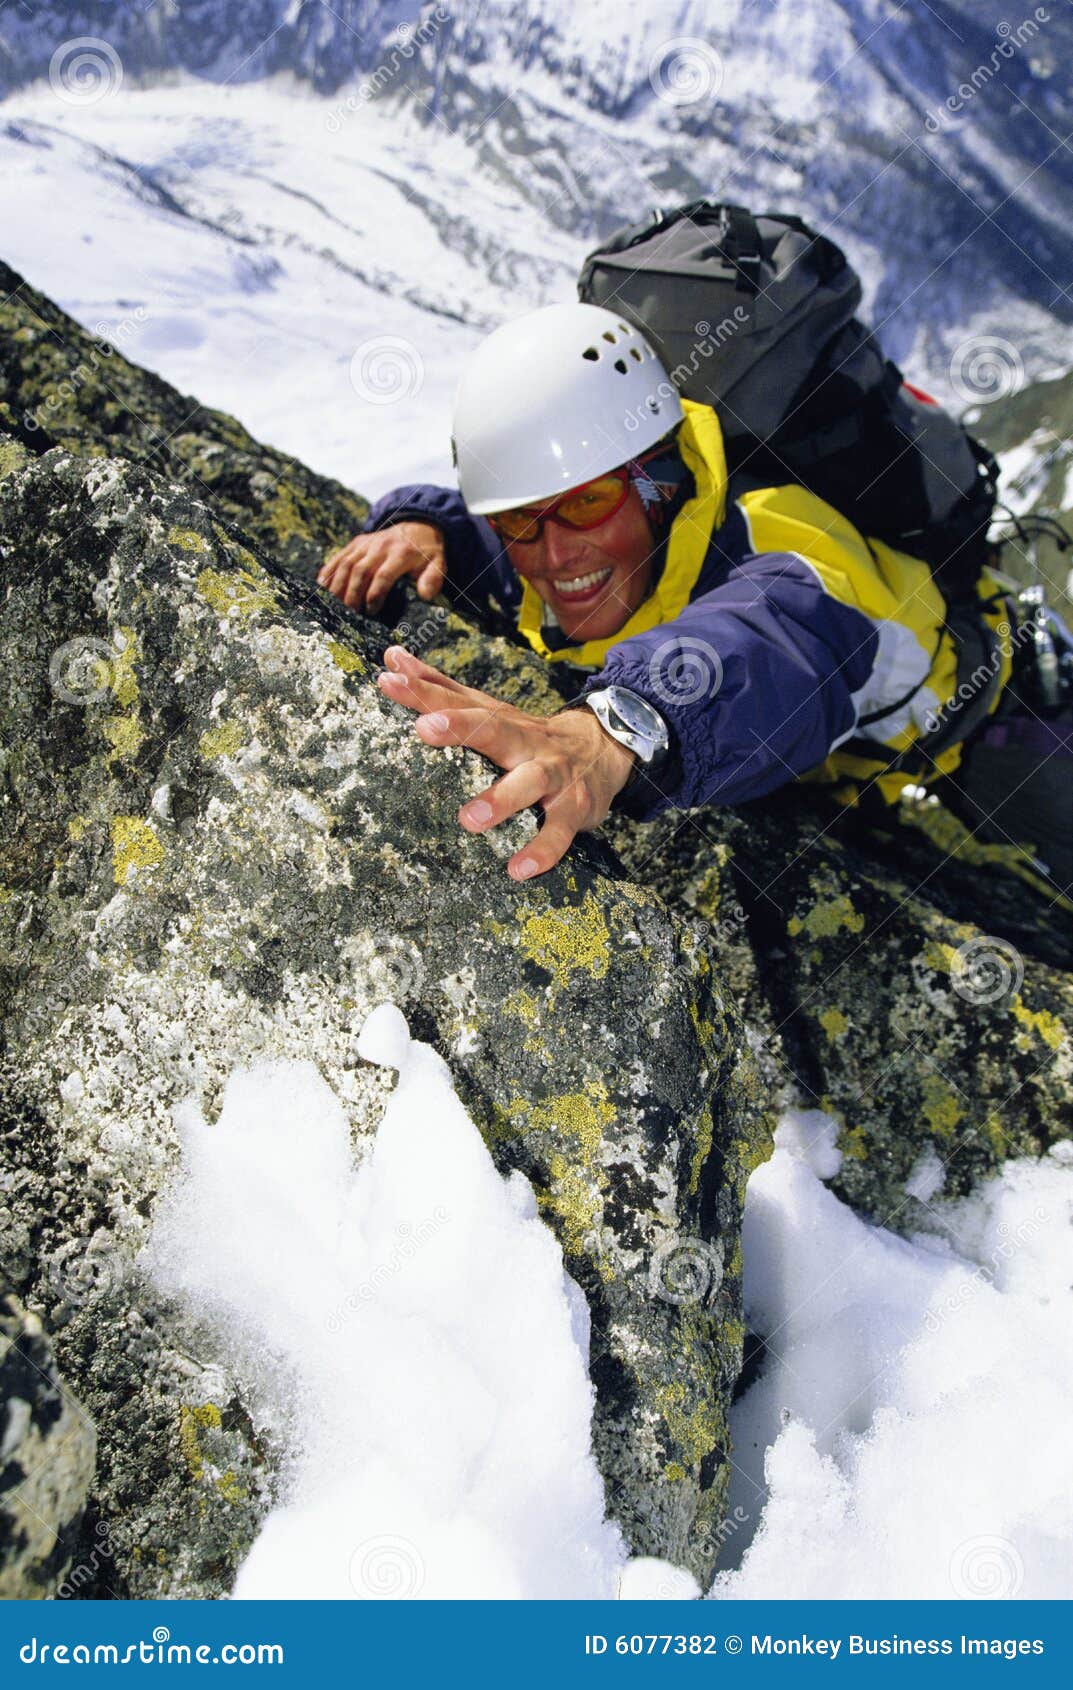 mountaineer climbing snowy rock face